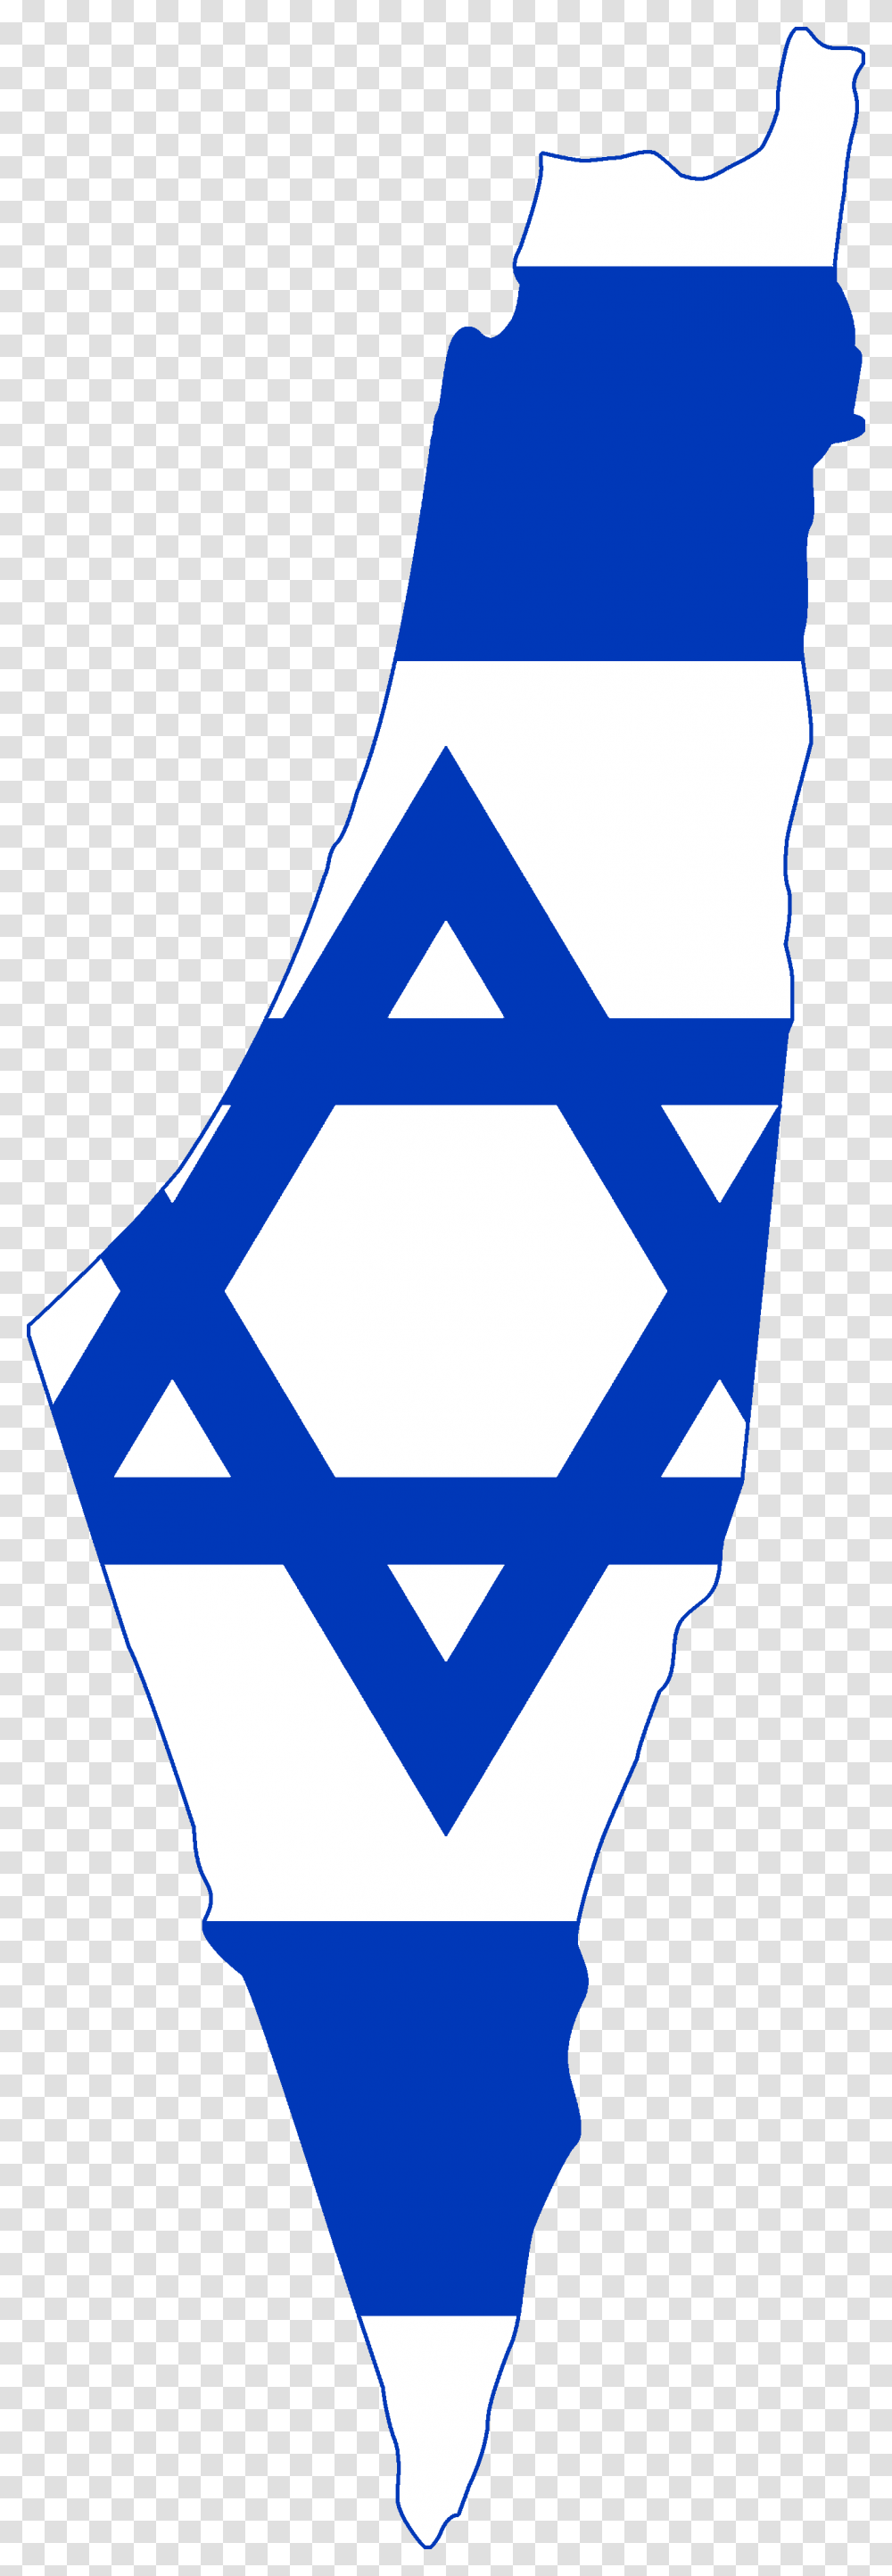 Israel Flag Vector Graphics Image National Flag Illustration Israel Map With Flag, Label, Lighting, Logo Transparent Png